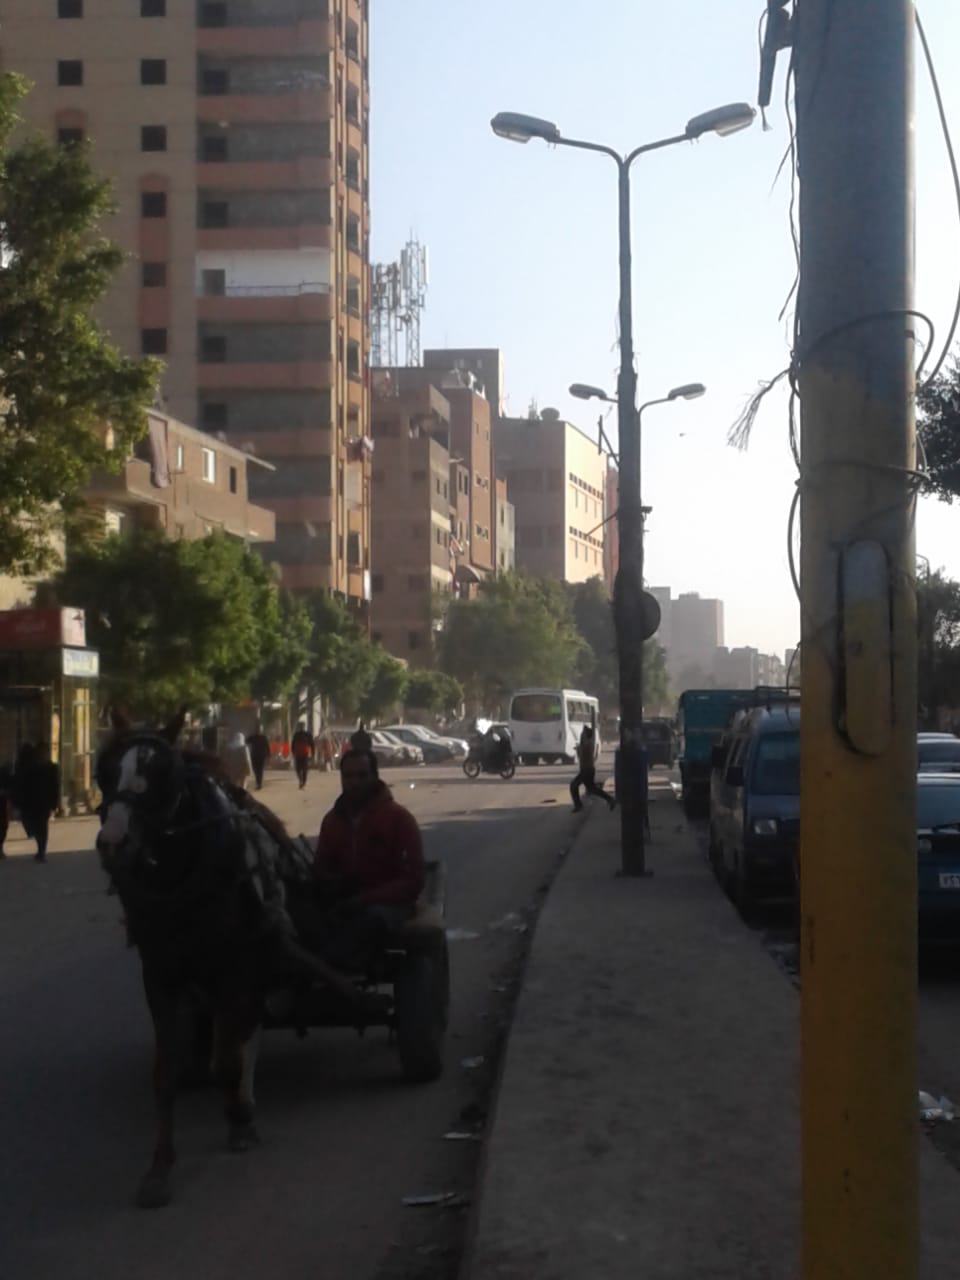 شارع كريستال عصفور بمدينة شبرا الخيمة (5)